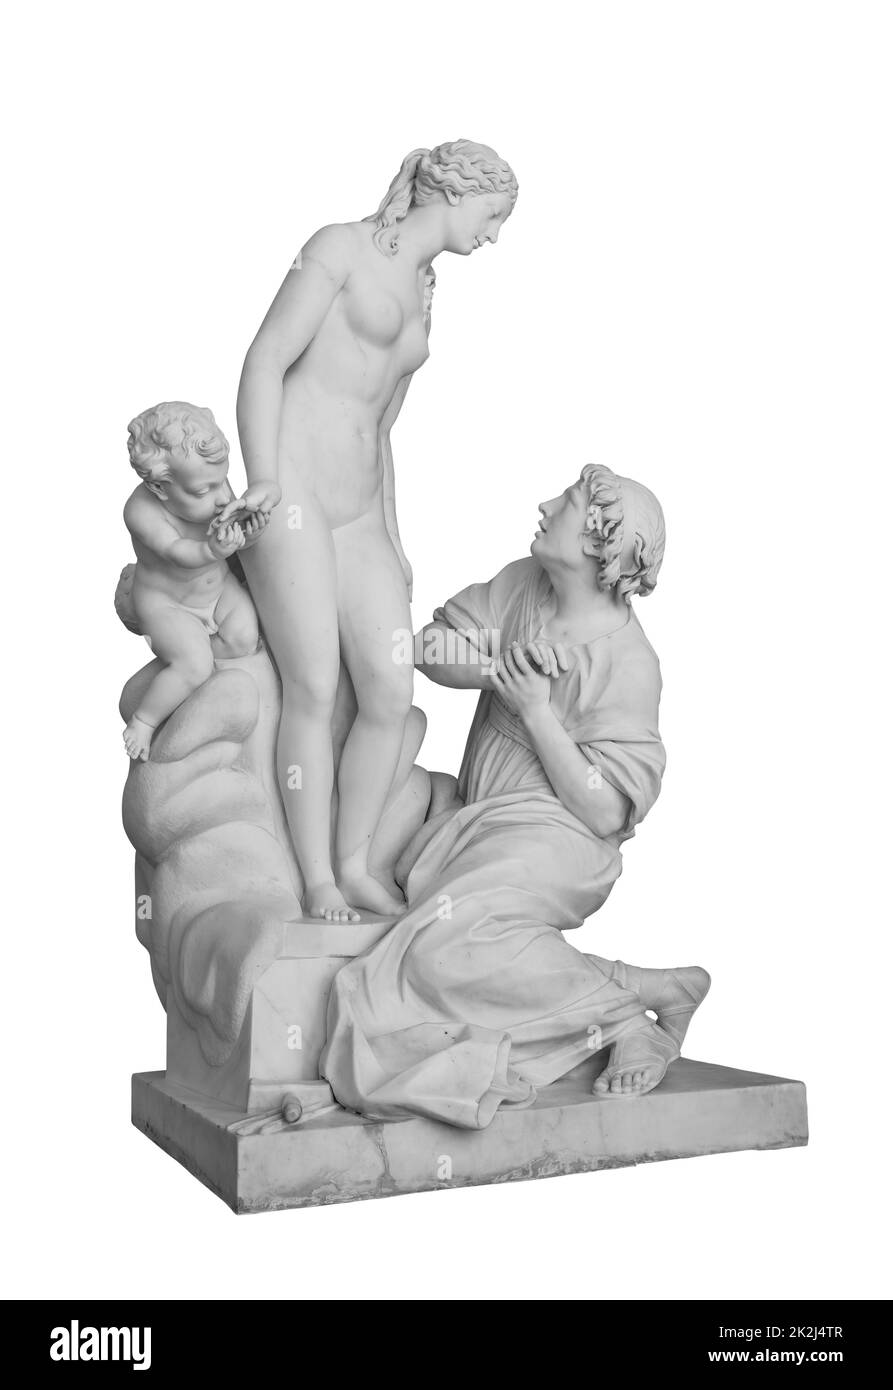 Statue ancienne. Sculpture de Pygmalion et de Galatée d'Etienne Falconet au Musée de l'Ermitage. Photo isolée de chef-d'œuvre avec masque Banque D'Images